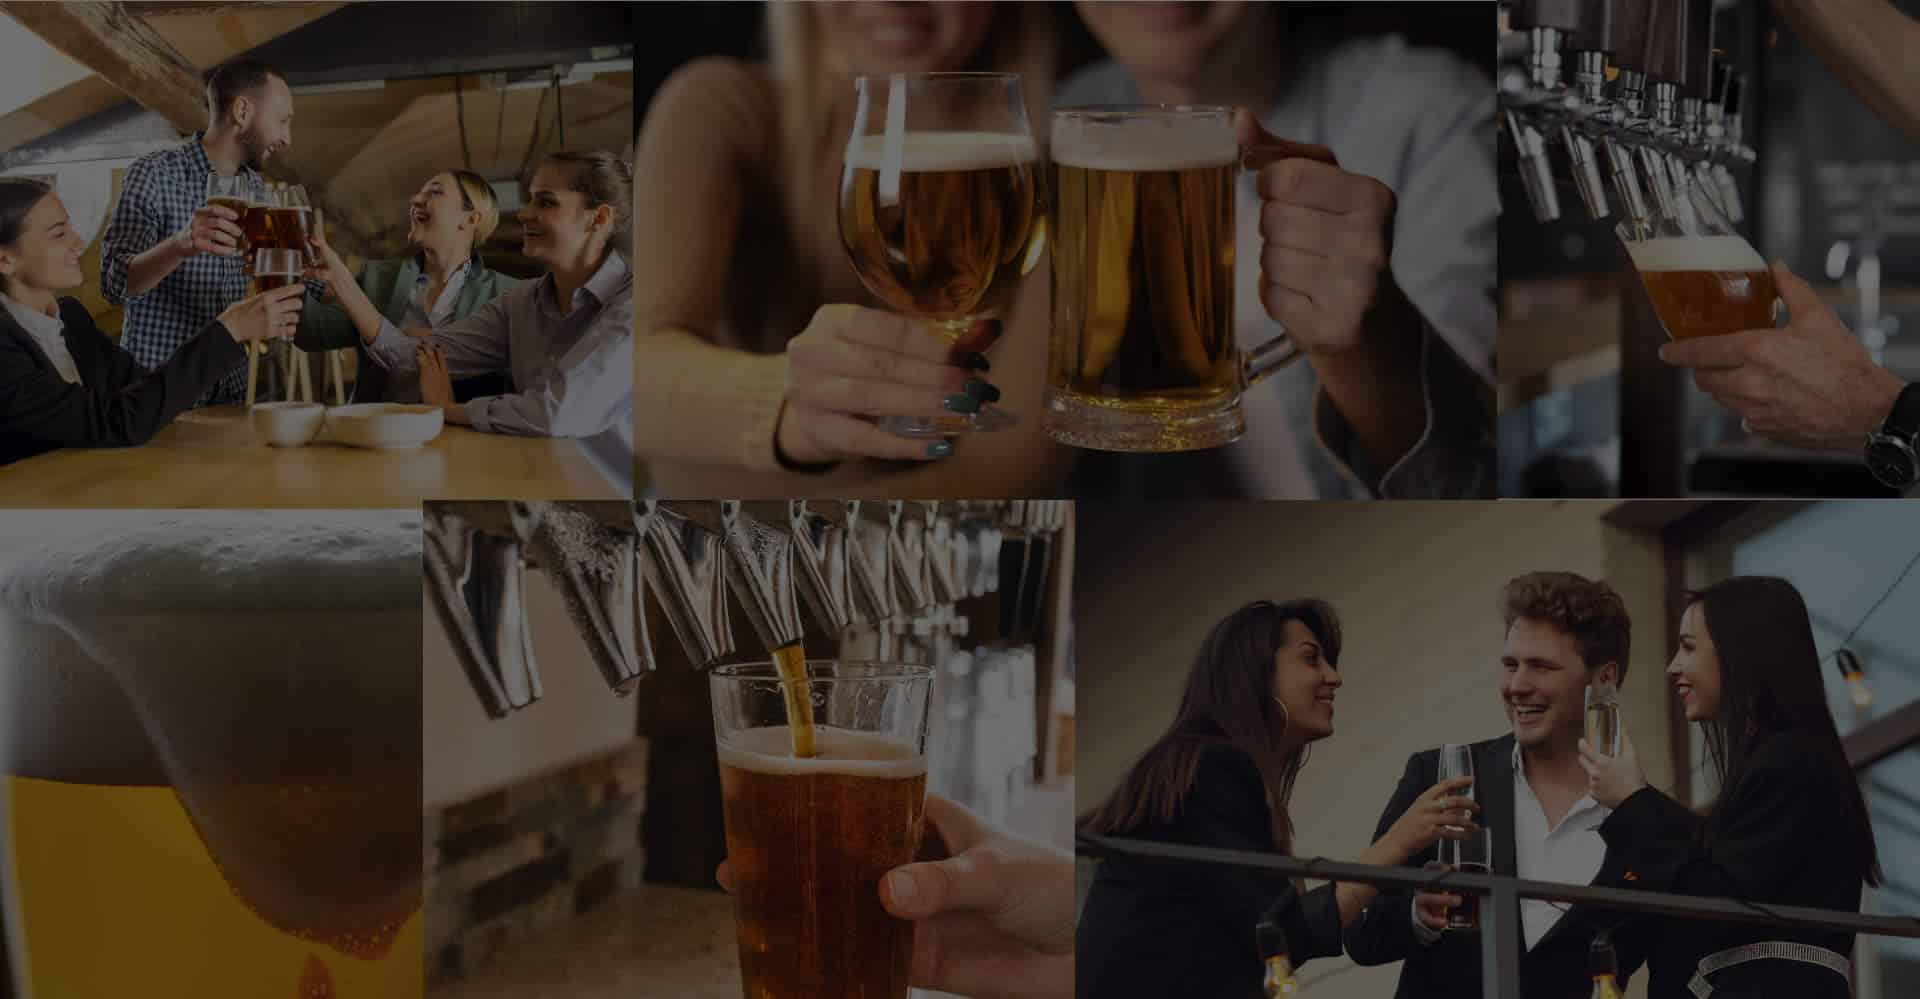 kegs-off-tap-draught-beer-corporate-collage.jpg